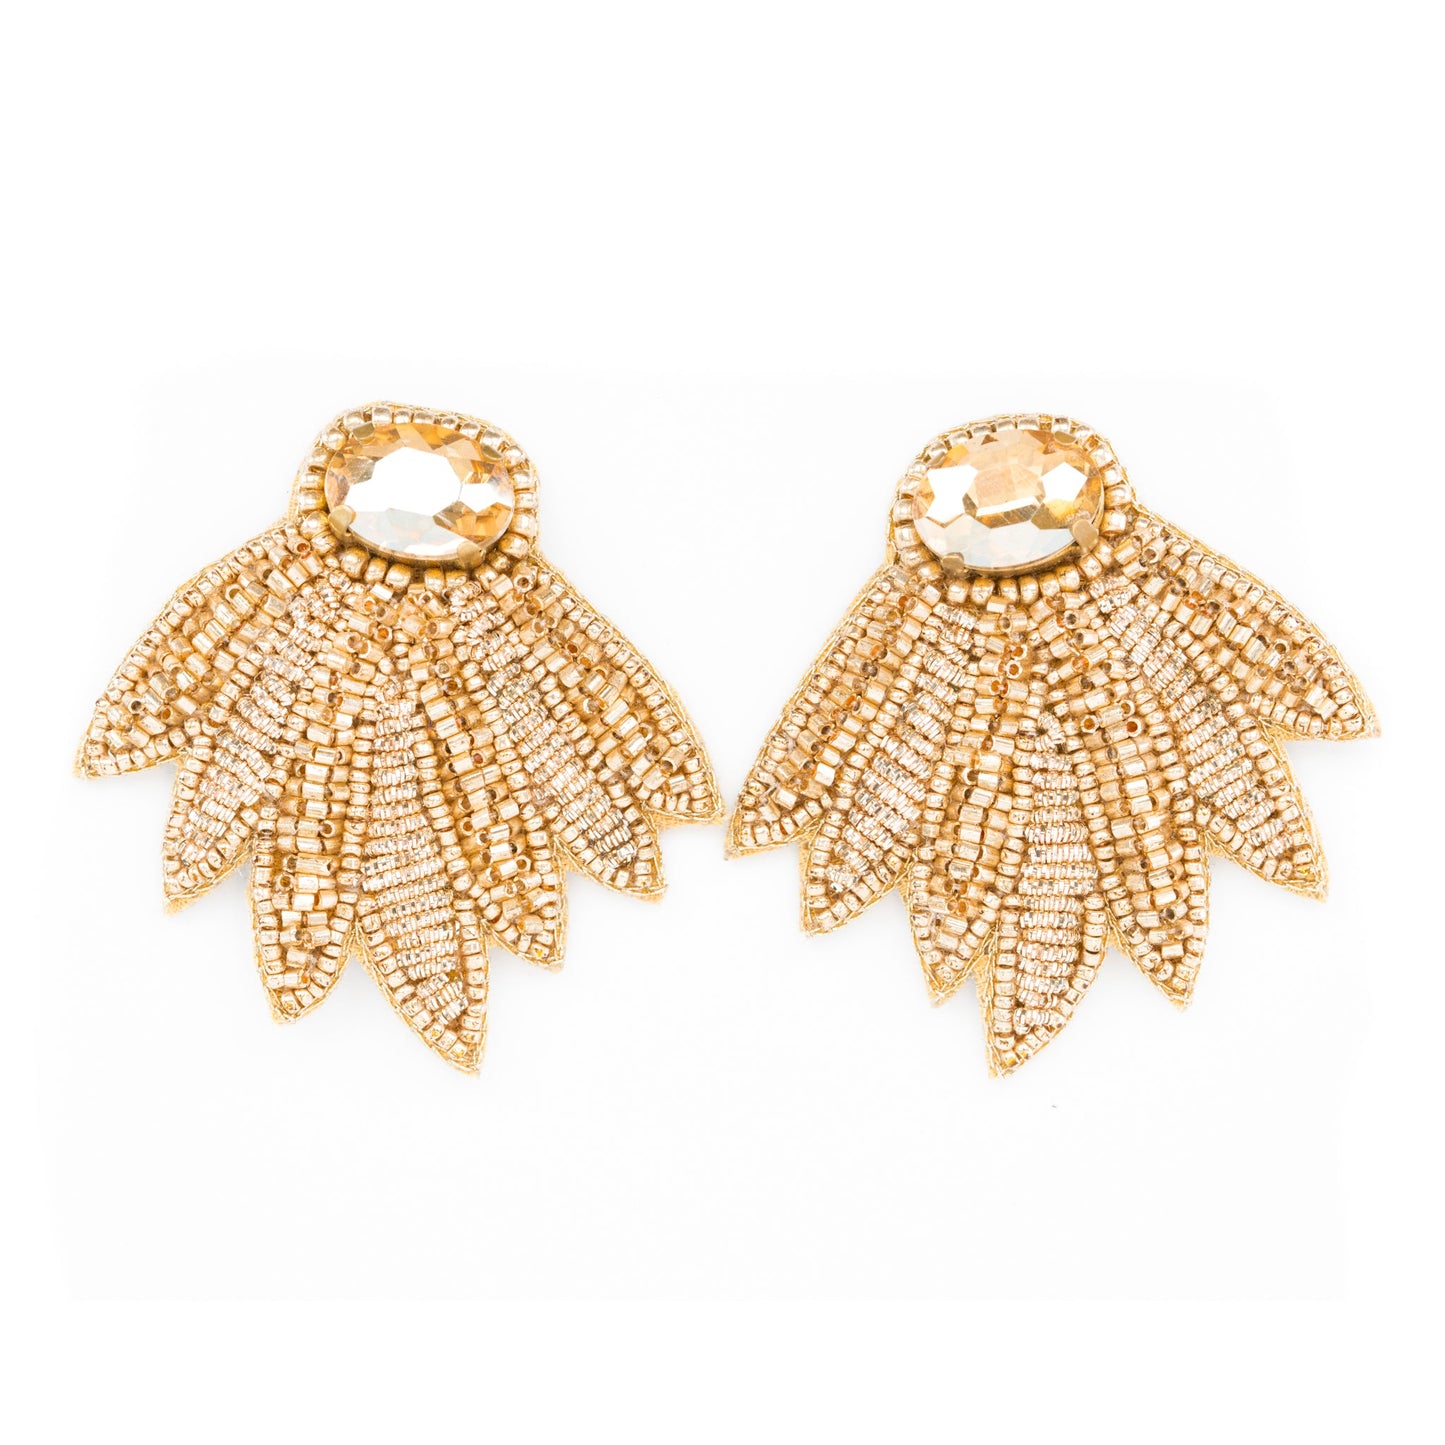 Beth Ladd Cameron Earrings in Gold